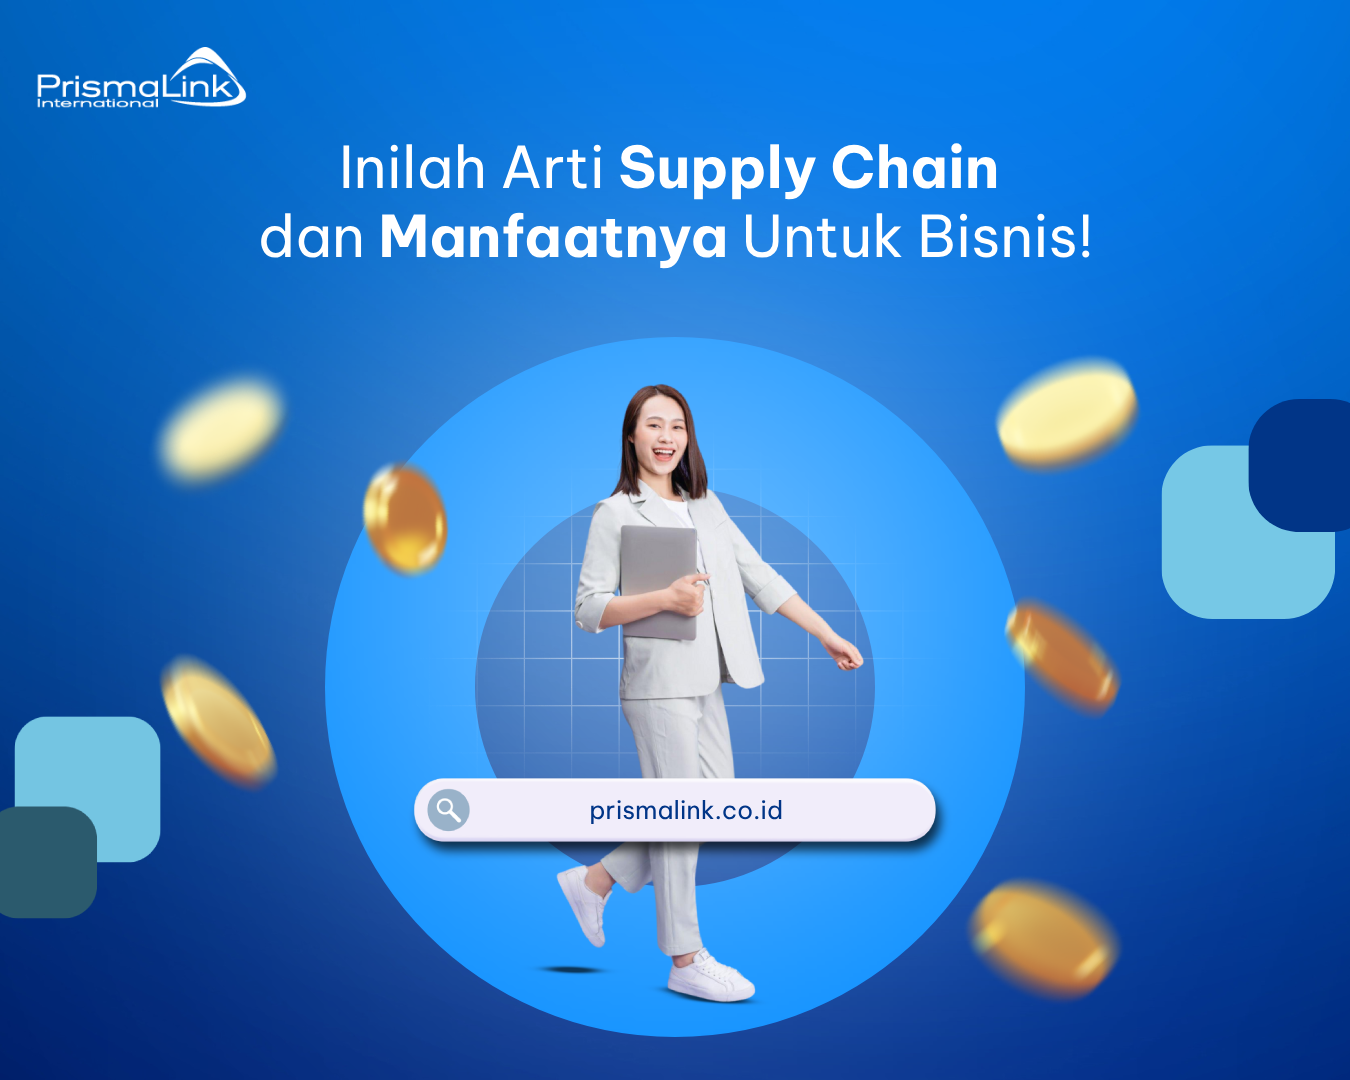 arti supply chain